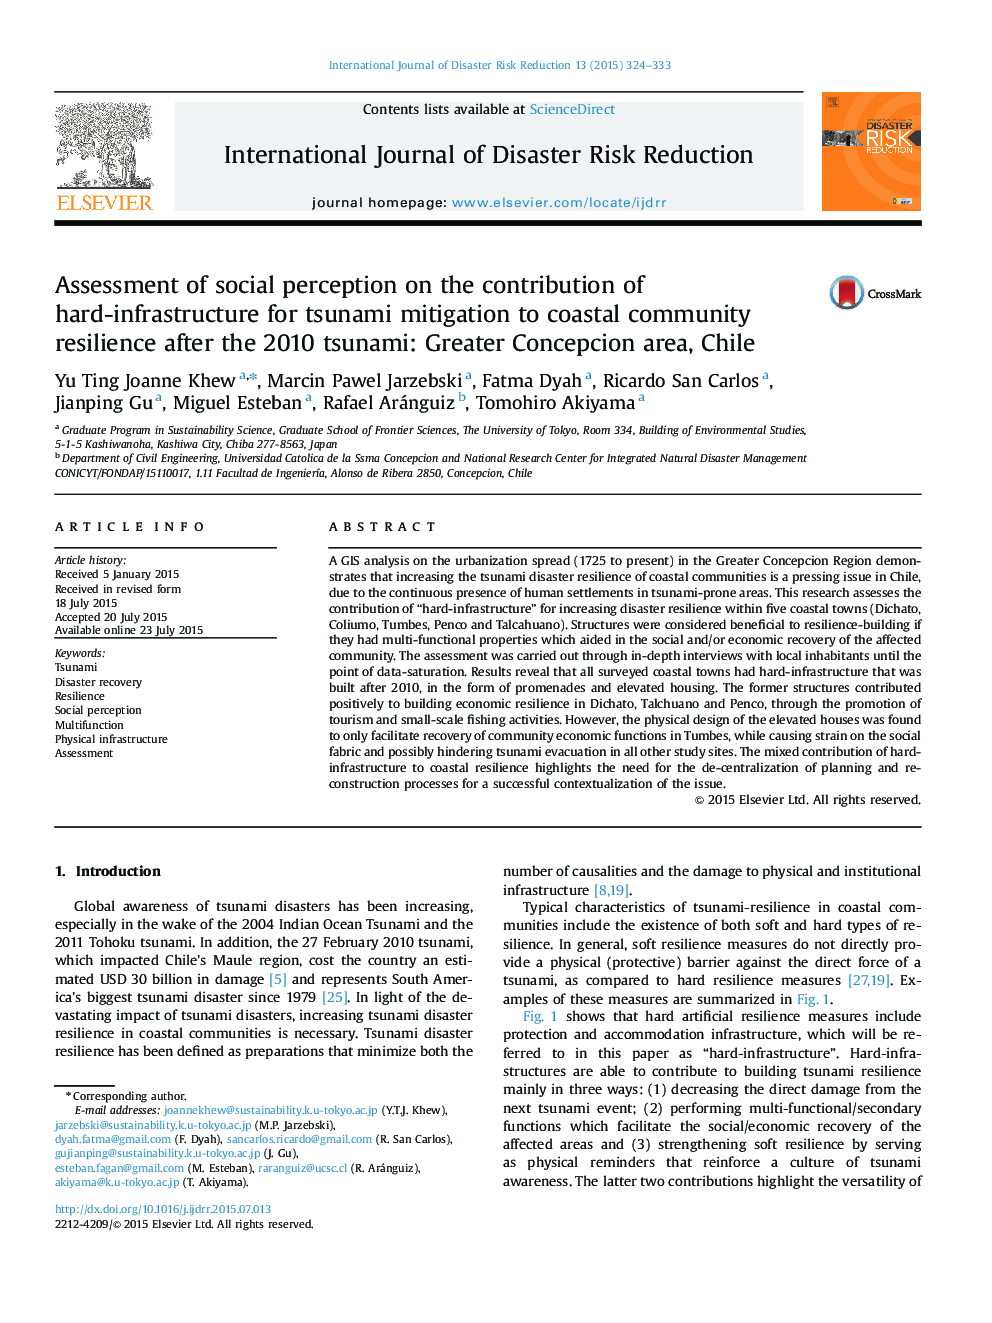 ارزیابی ادراک اجتماعی درباره سهم زیرساختی سخت برای کاهش سونامی به انعطاف پذیری جامعه ساحلی پس از سونامی سال 2010: منطقه بزرگ کانپسیک، شیلی 